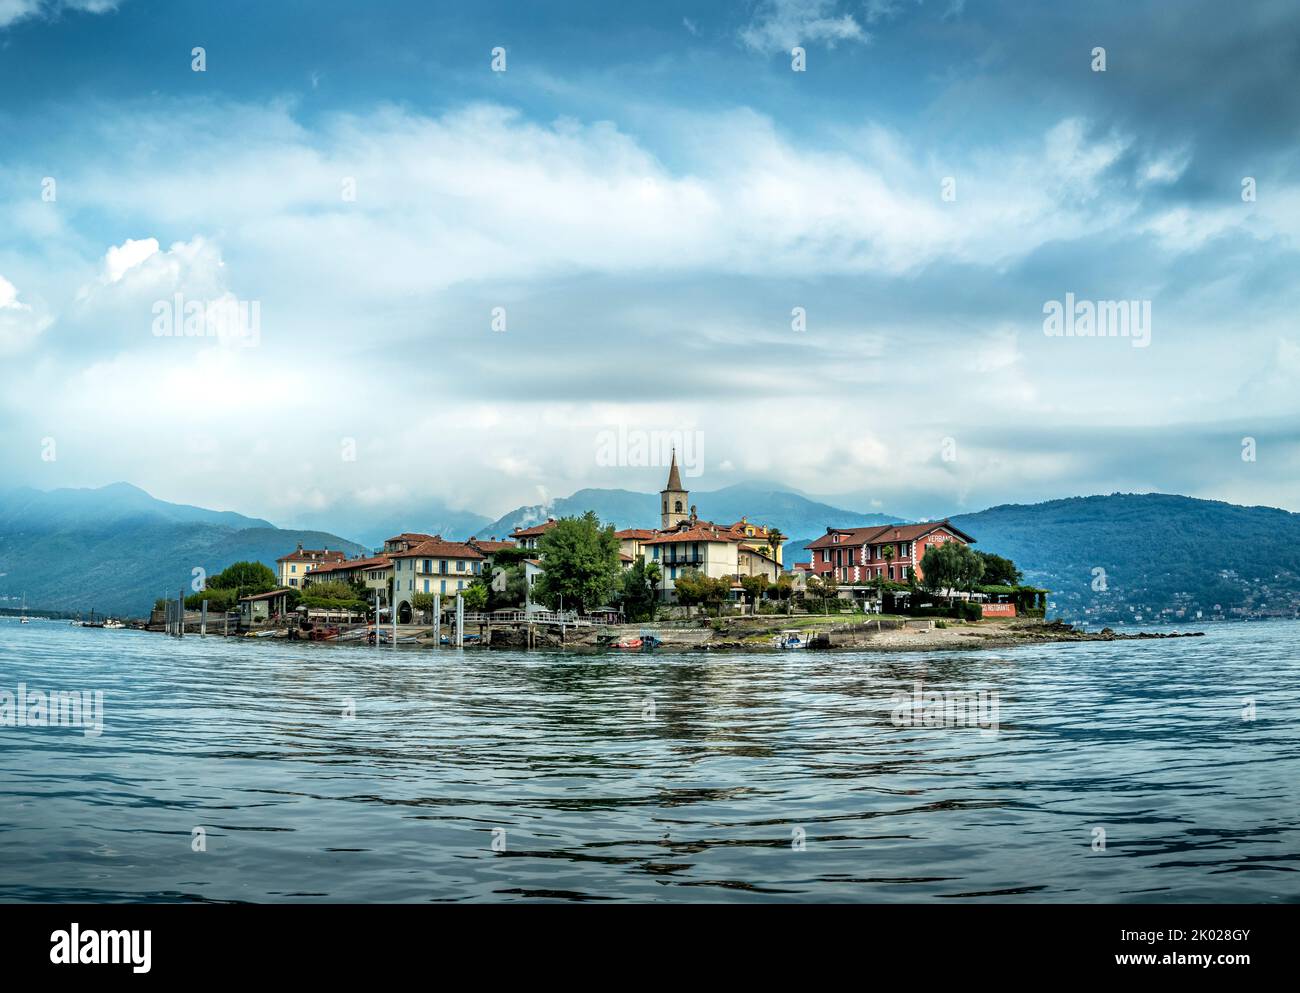 Isola superiore on Lake Maggiore Italy Stock Photo